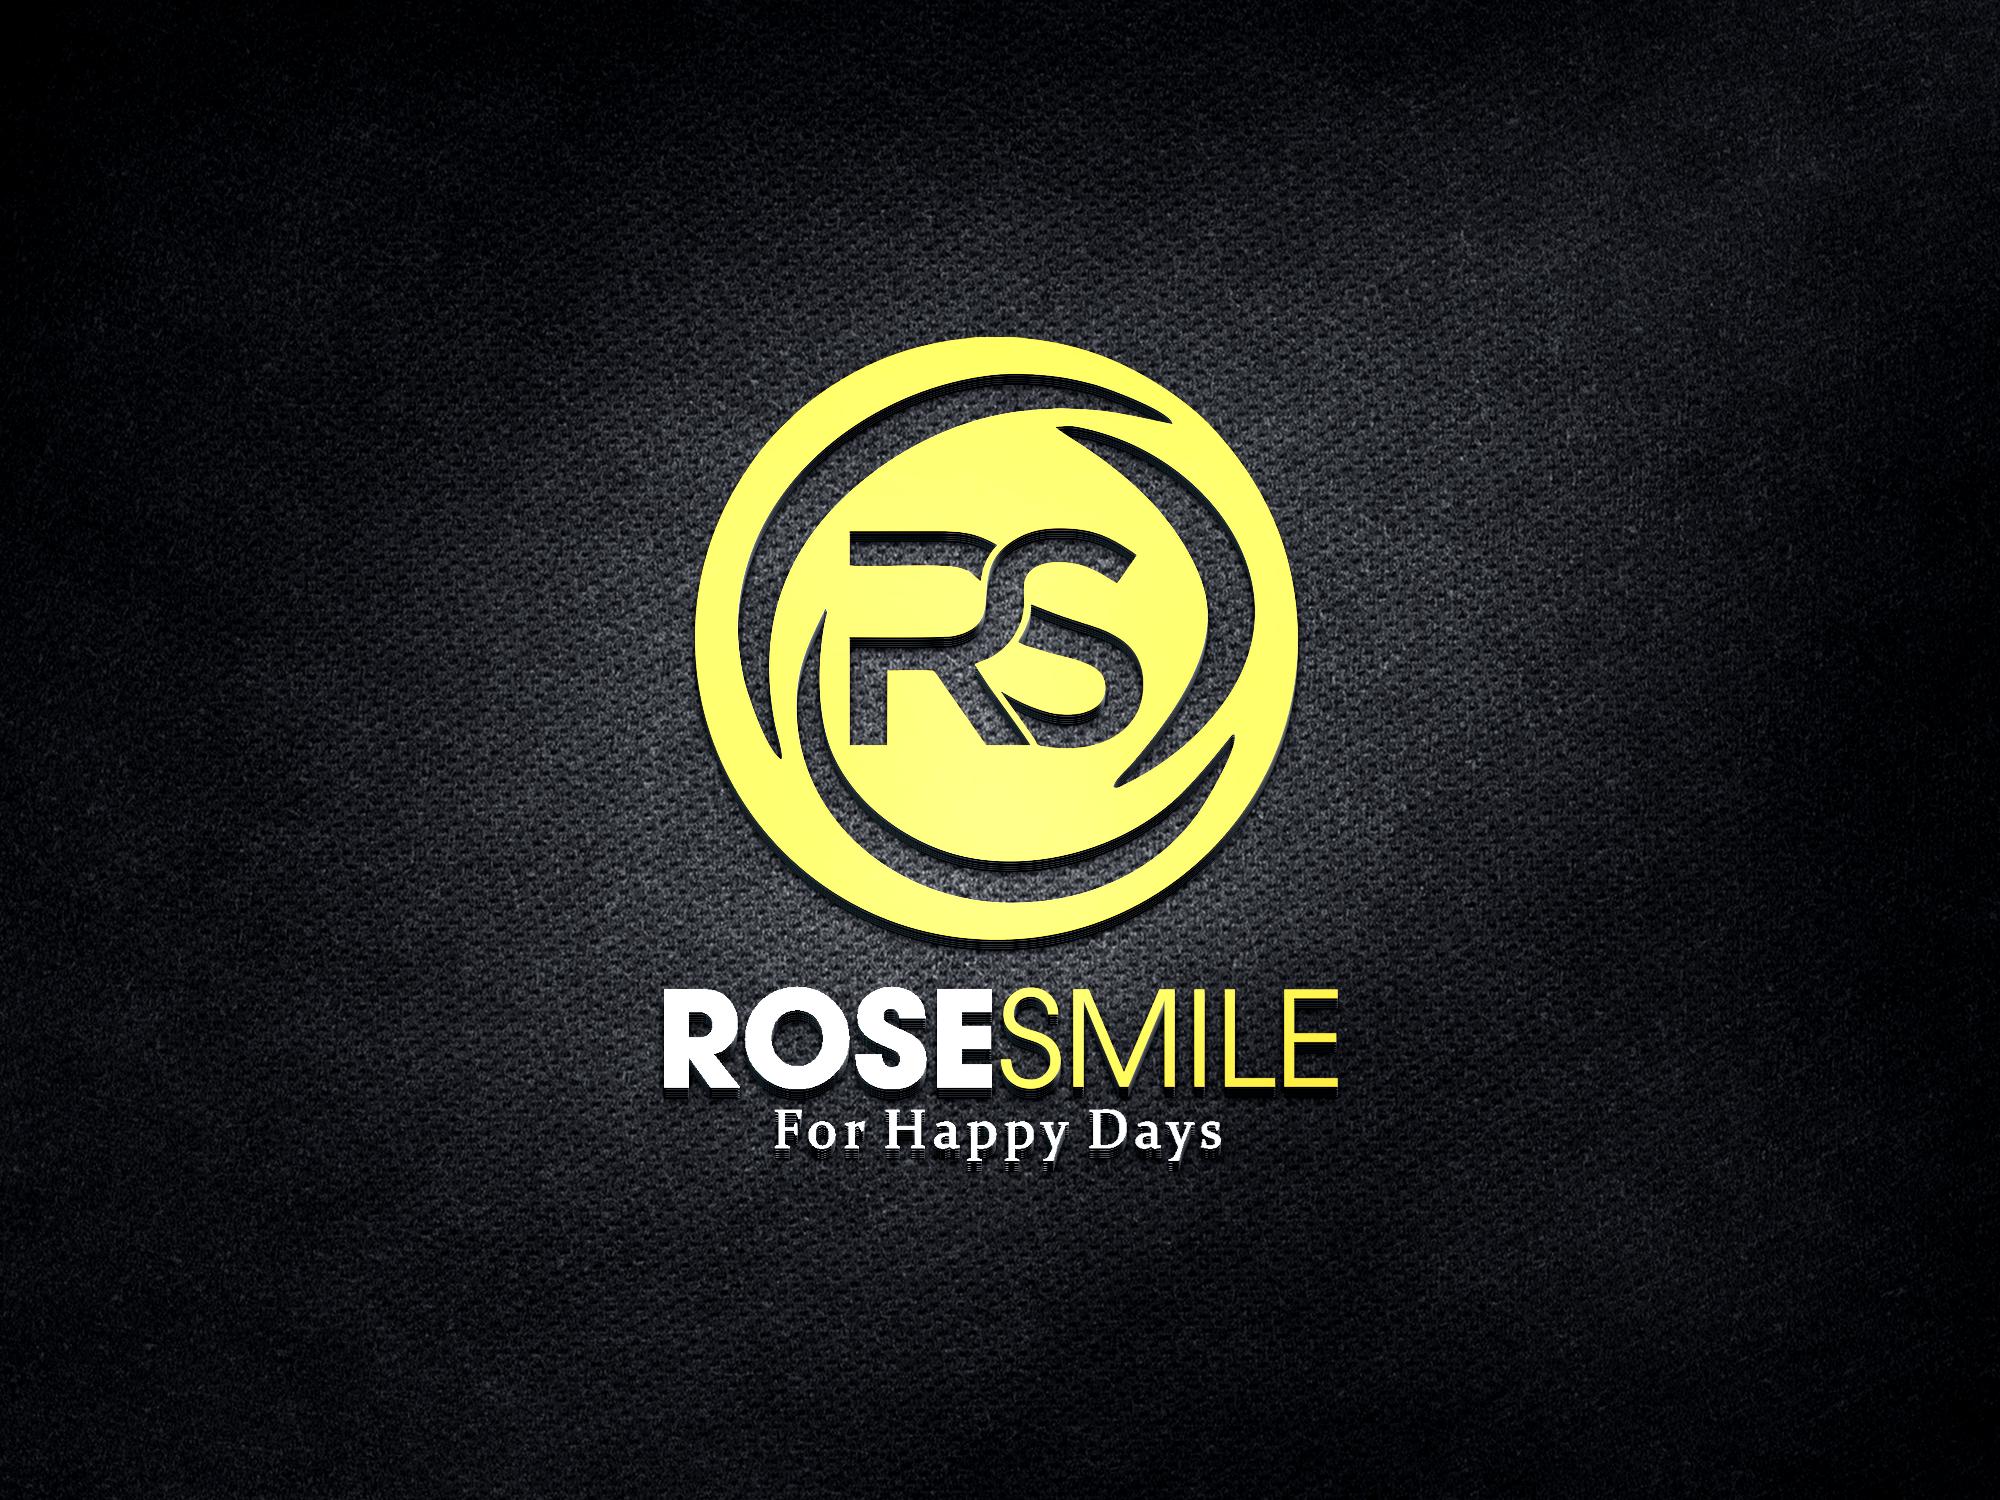 thiết kế logo rose smile 3